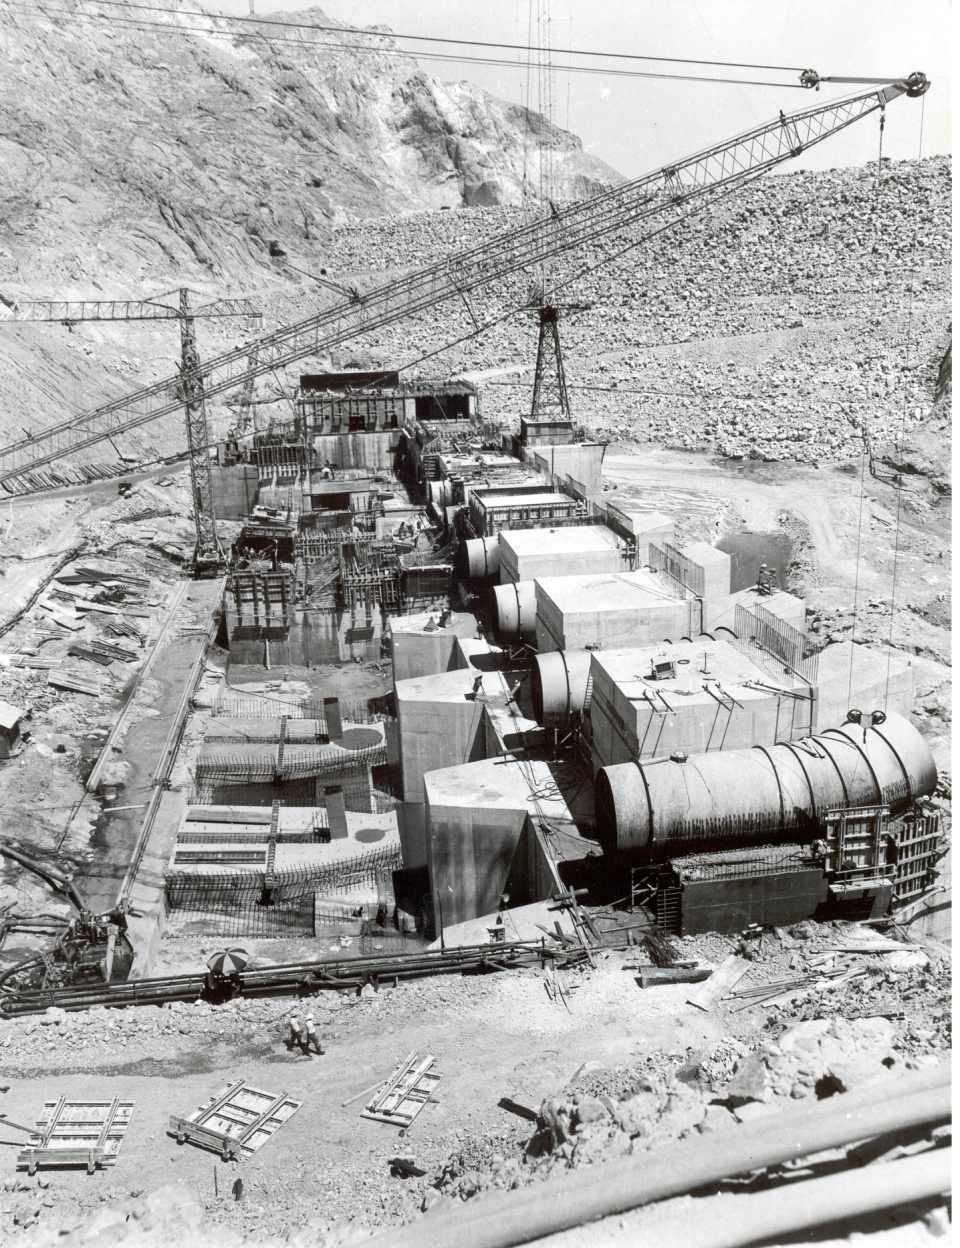 <p>Keban Barajı ve Hidroelektrik Santrali (HES), 1974'ten bu yana 46 yıldır kesintisiz sürdürdüğü enerji üretimiyle ekonomiye yılda yaklaşık 27 milyar dolar katkı sağladı. Devlet Su İşleri (DSİ), söz konusu baraj inşaatının 1966-1974 yılları arasında yapım çalışmalarını fotoğraflarla kayıt altına aldı. Fotoğraflarda inşaattaki büyük iş makinelerinin o zaman Elazığ il merkezinde faytonların yanından geçişi, Elazığlıların iş makinelerini ilgiyle izleyişi, yapımı için kurulan beton santrali, sondaj ve patlatma çalışmalarıyla yıkılan eski Fırat Köprüsü de yer alıyor.</p>

<p> </p>
